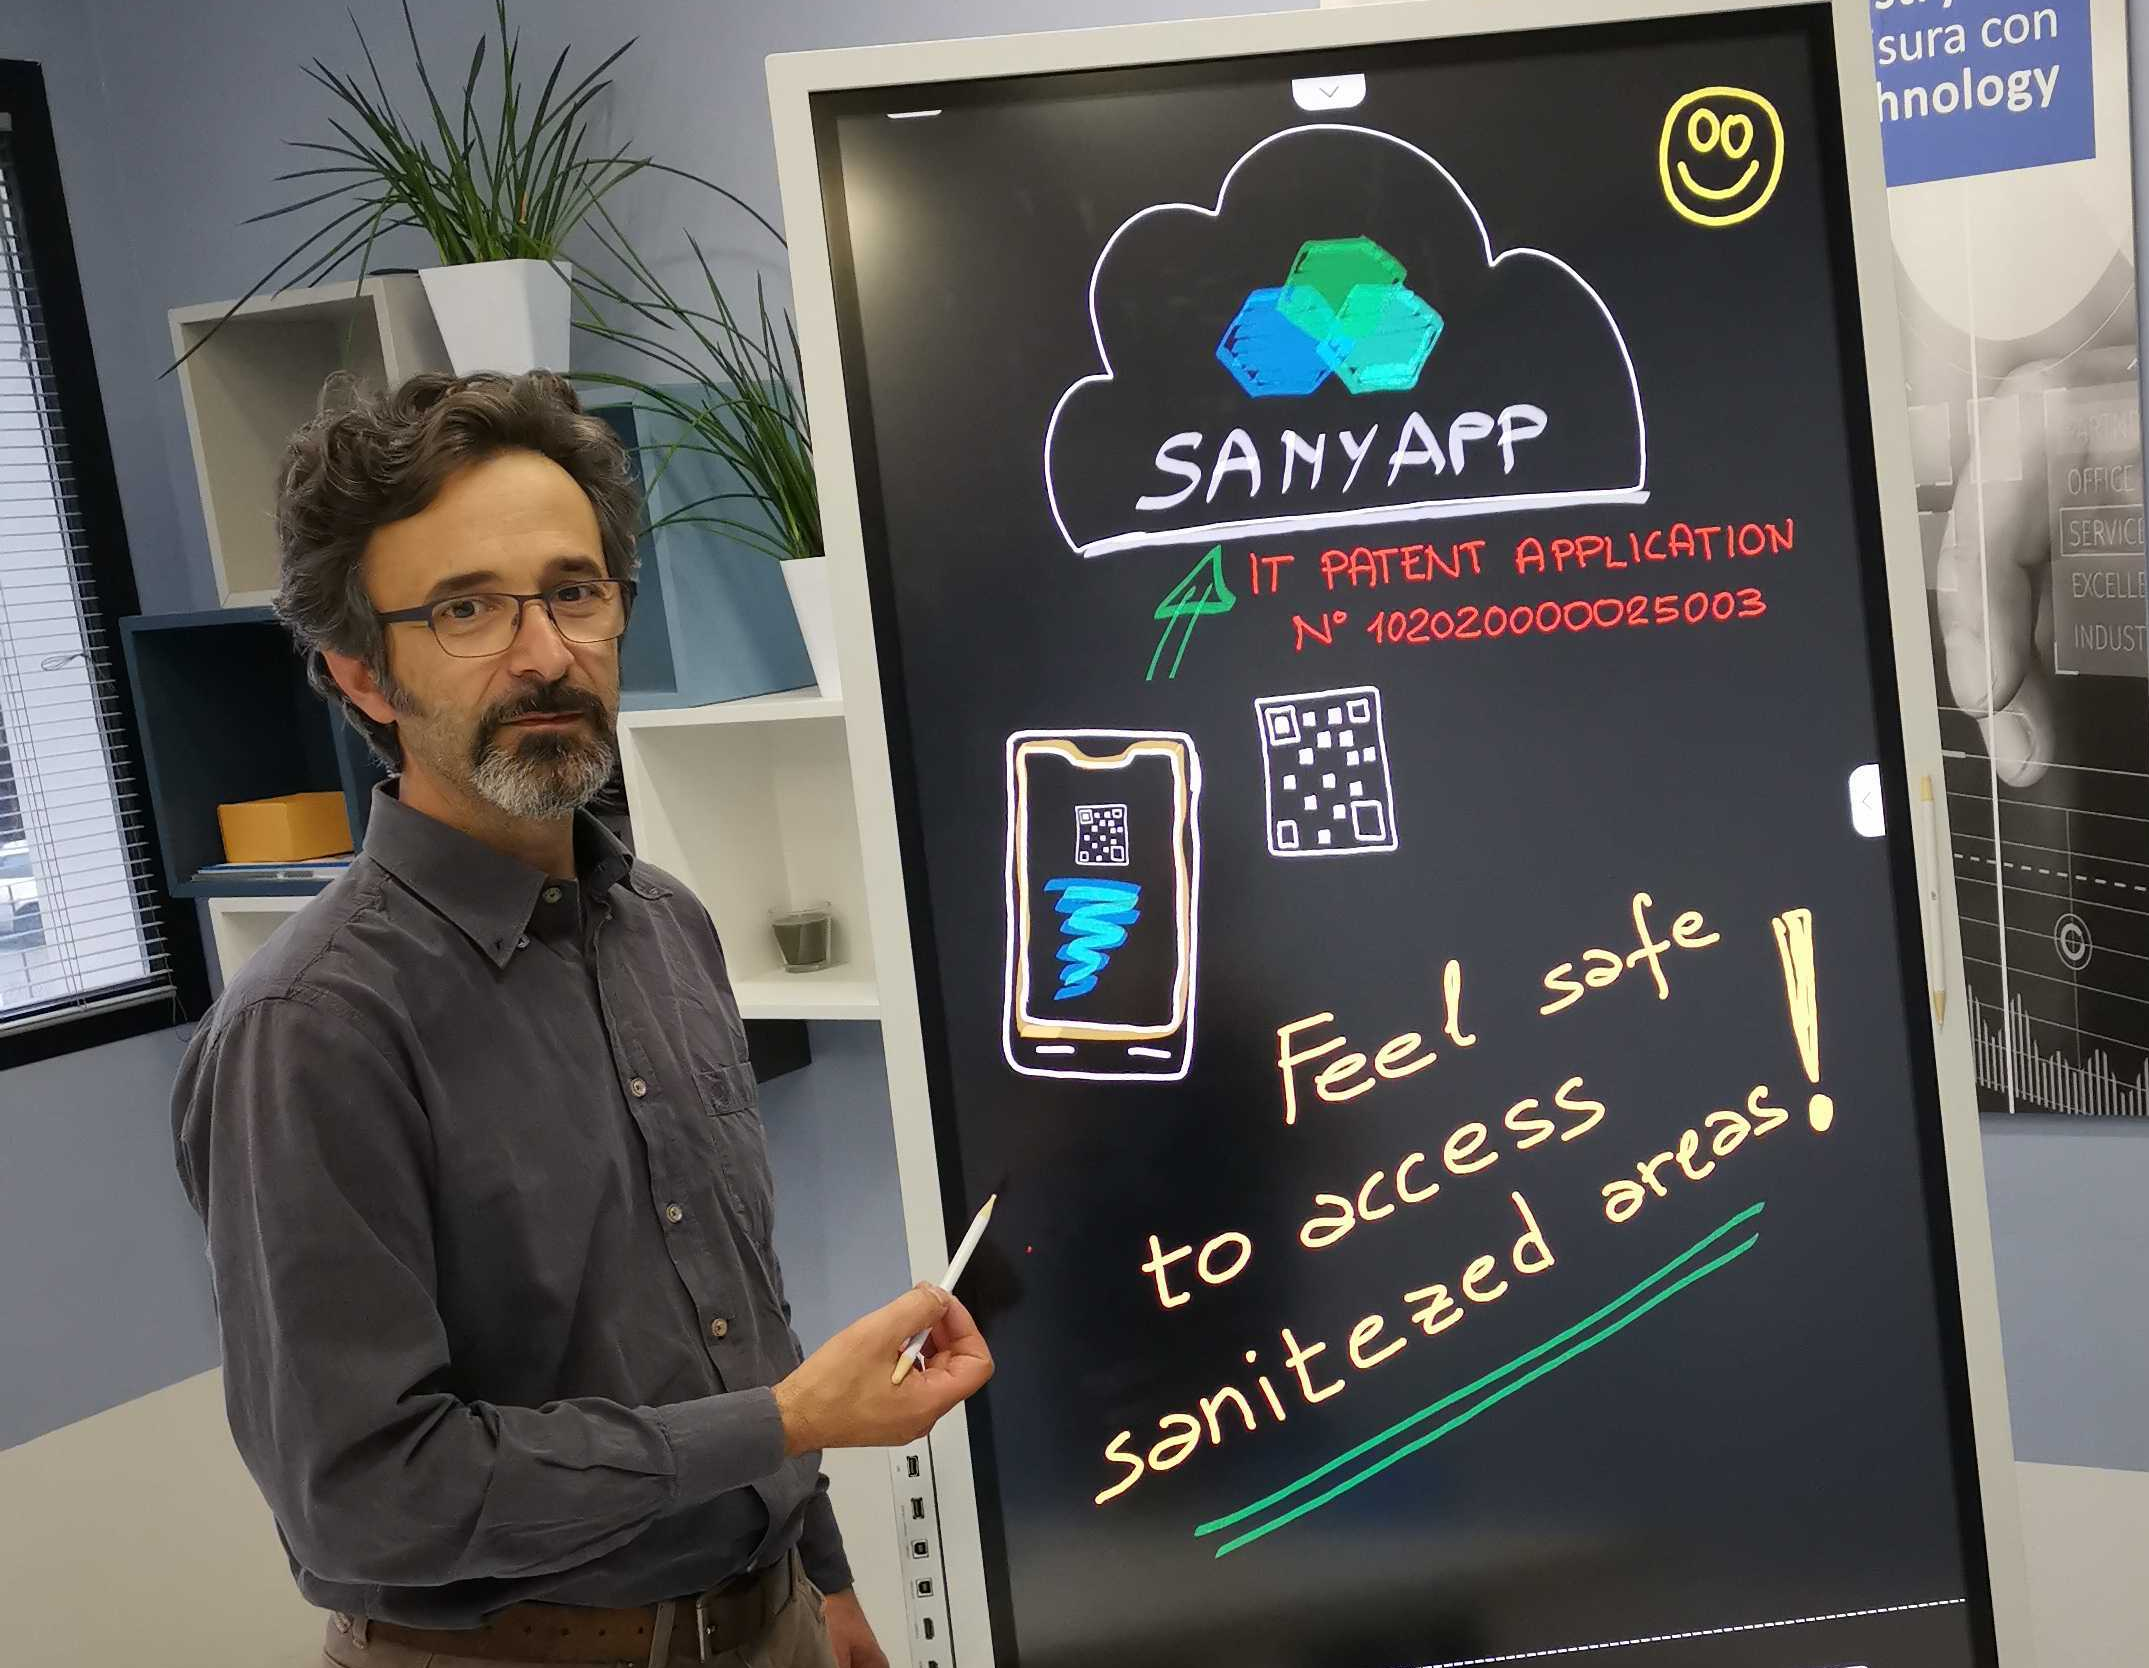 Sanyapp: come accedere in modo sicuro alle aree sanificate